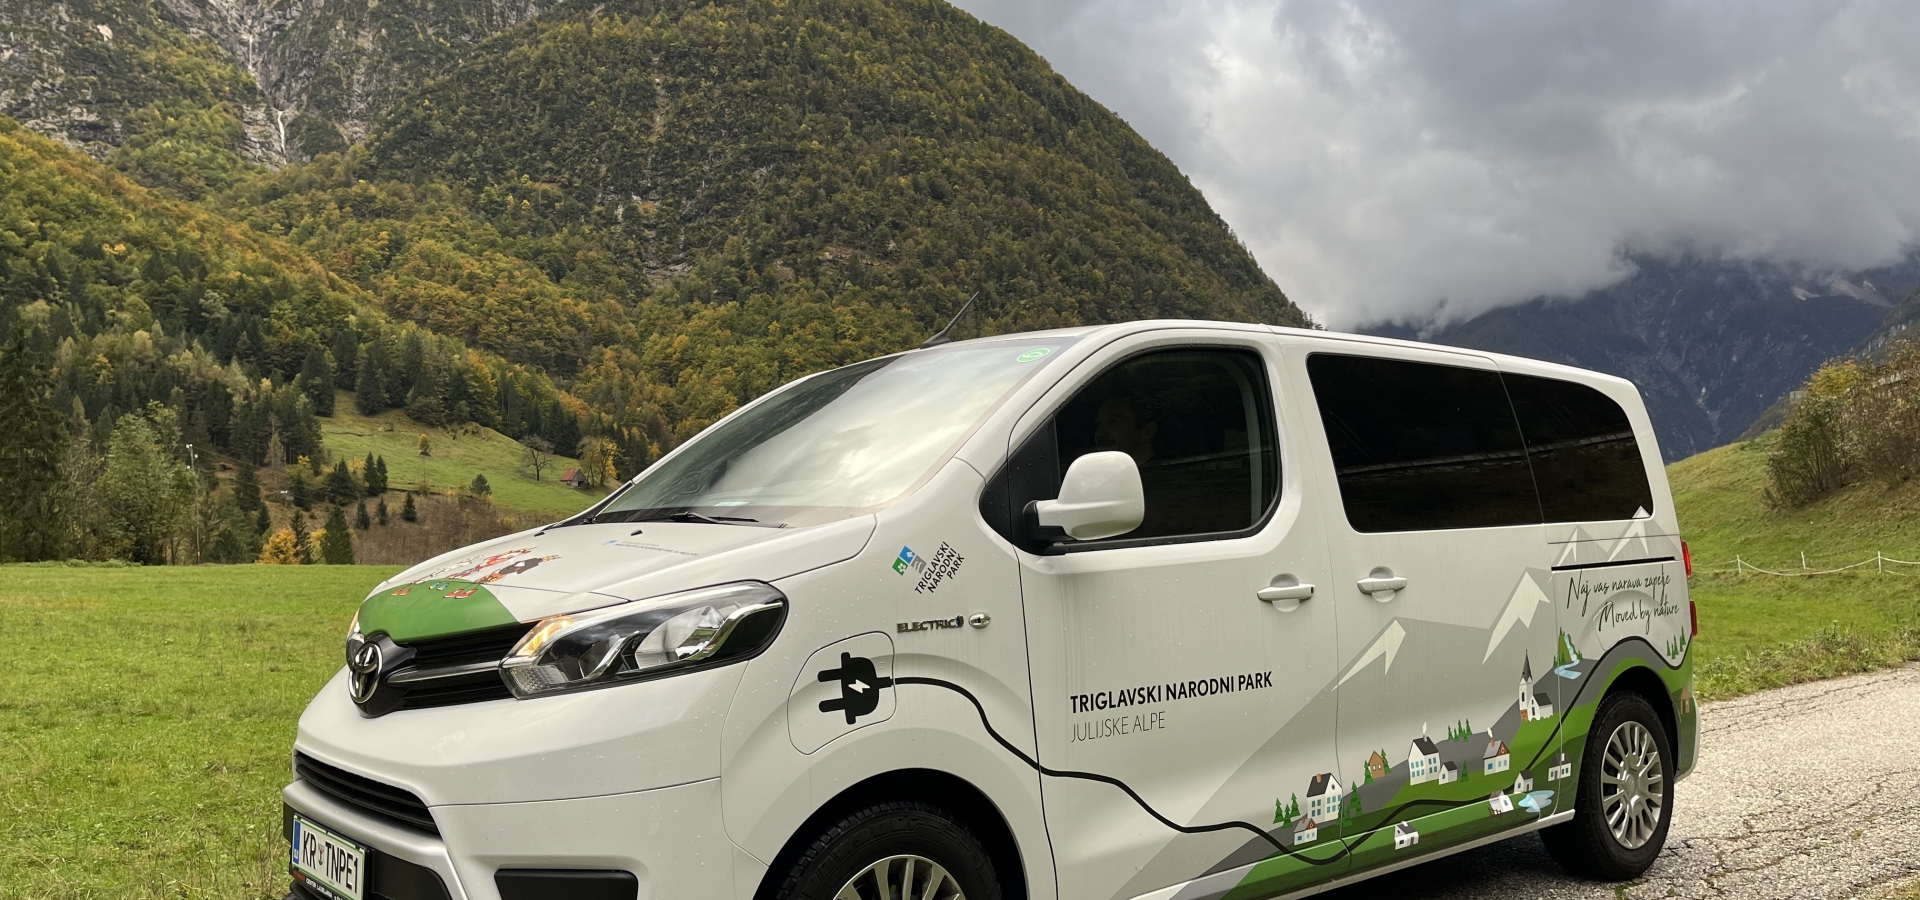 Petim občinam Triglavskega narodnega parka predana električna vozila